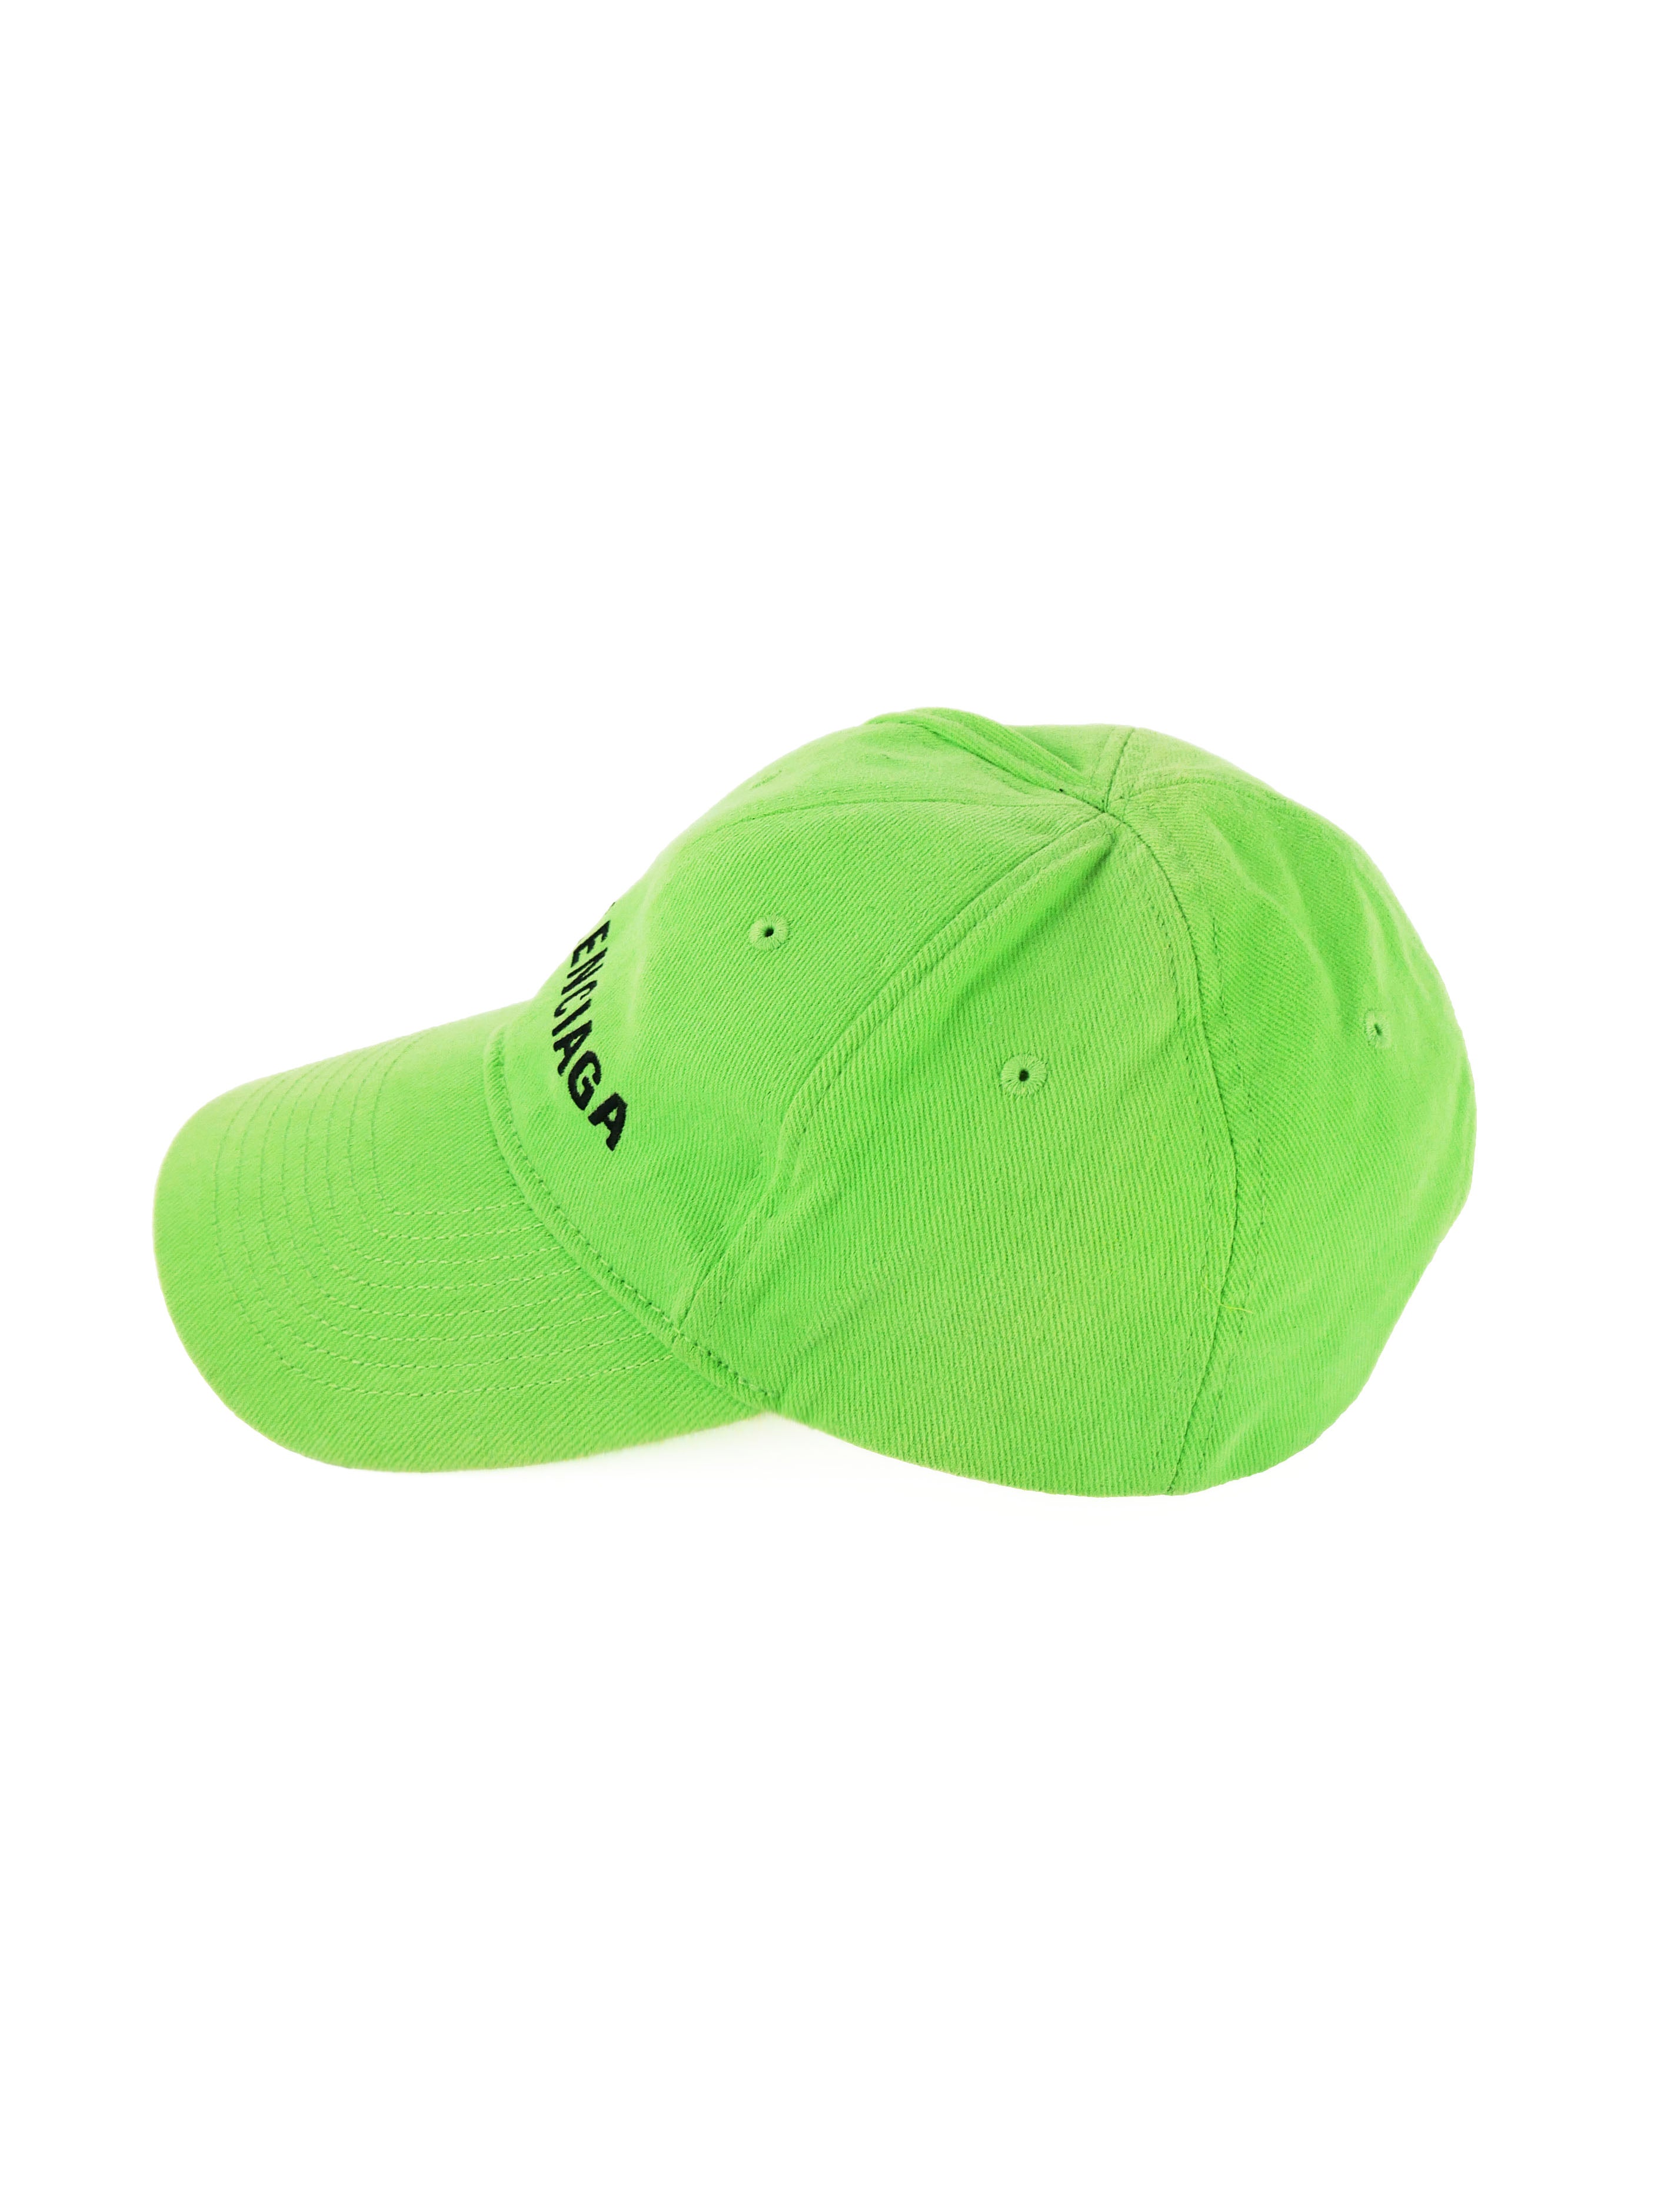 balenciaga-green-cap-3.jpg